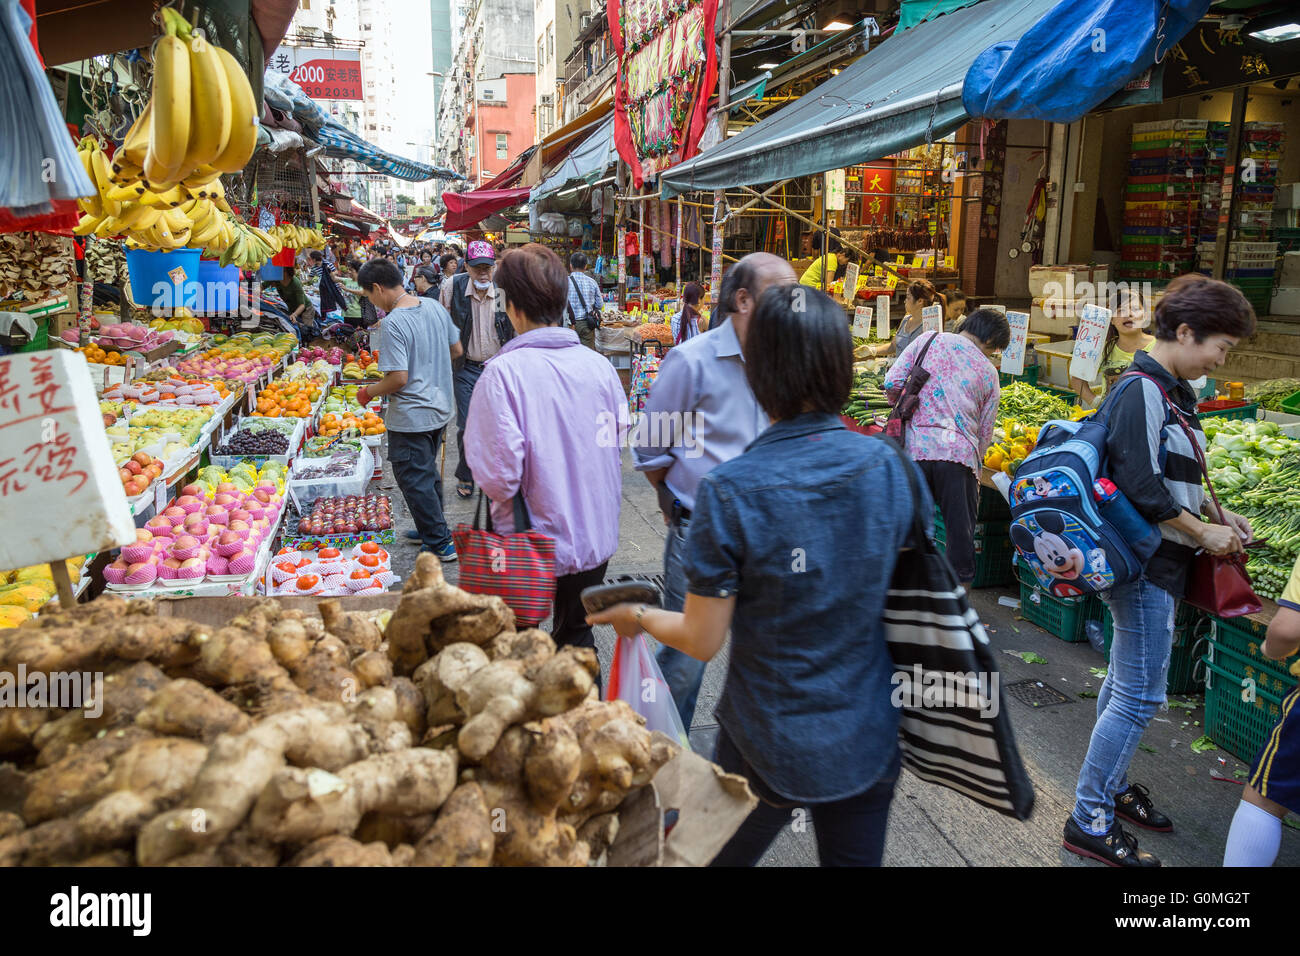 Persone tra bancarelle piene di frutta e verdura alla strada del mercato di Tai Po, Hong Kong, Cina. Foto Stock